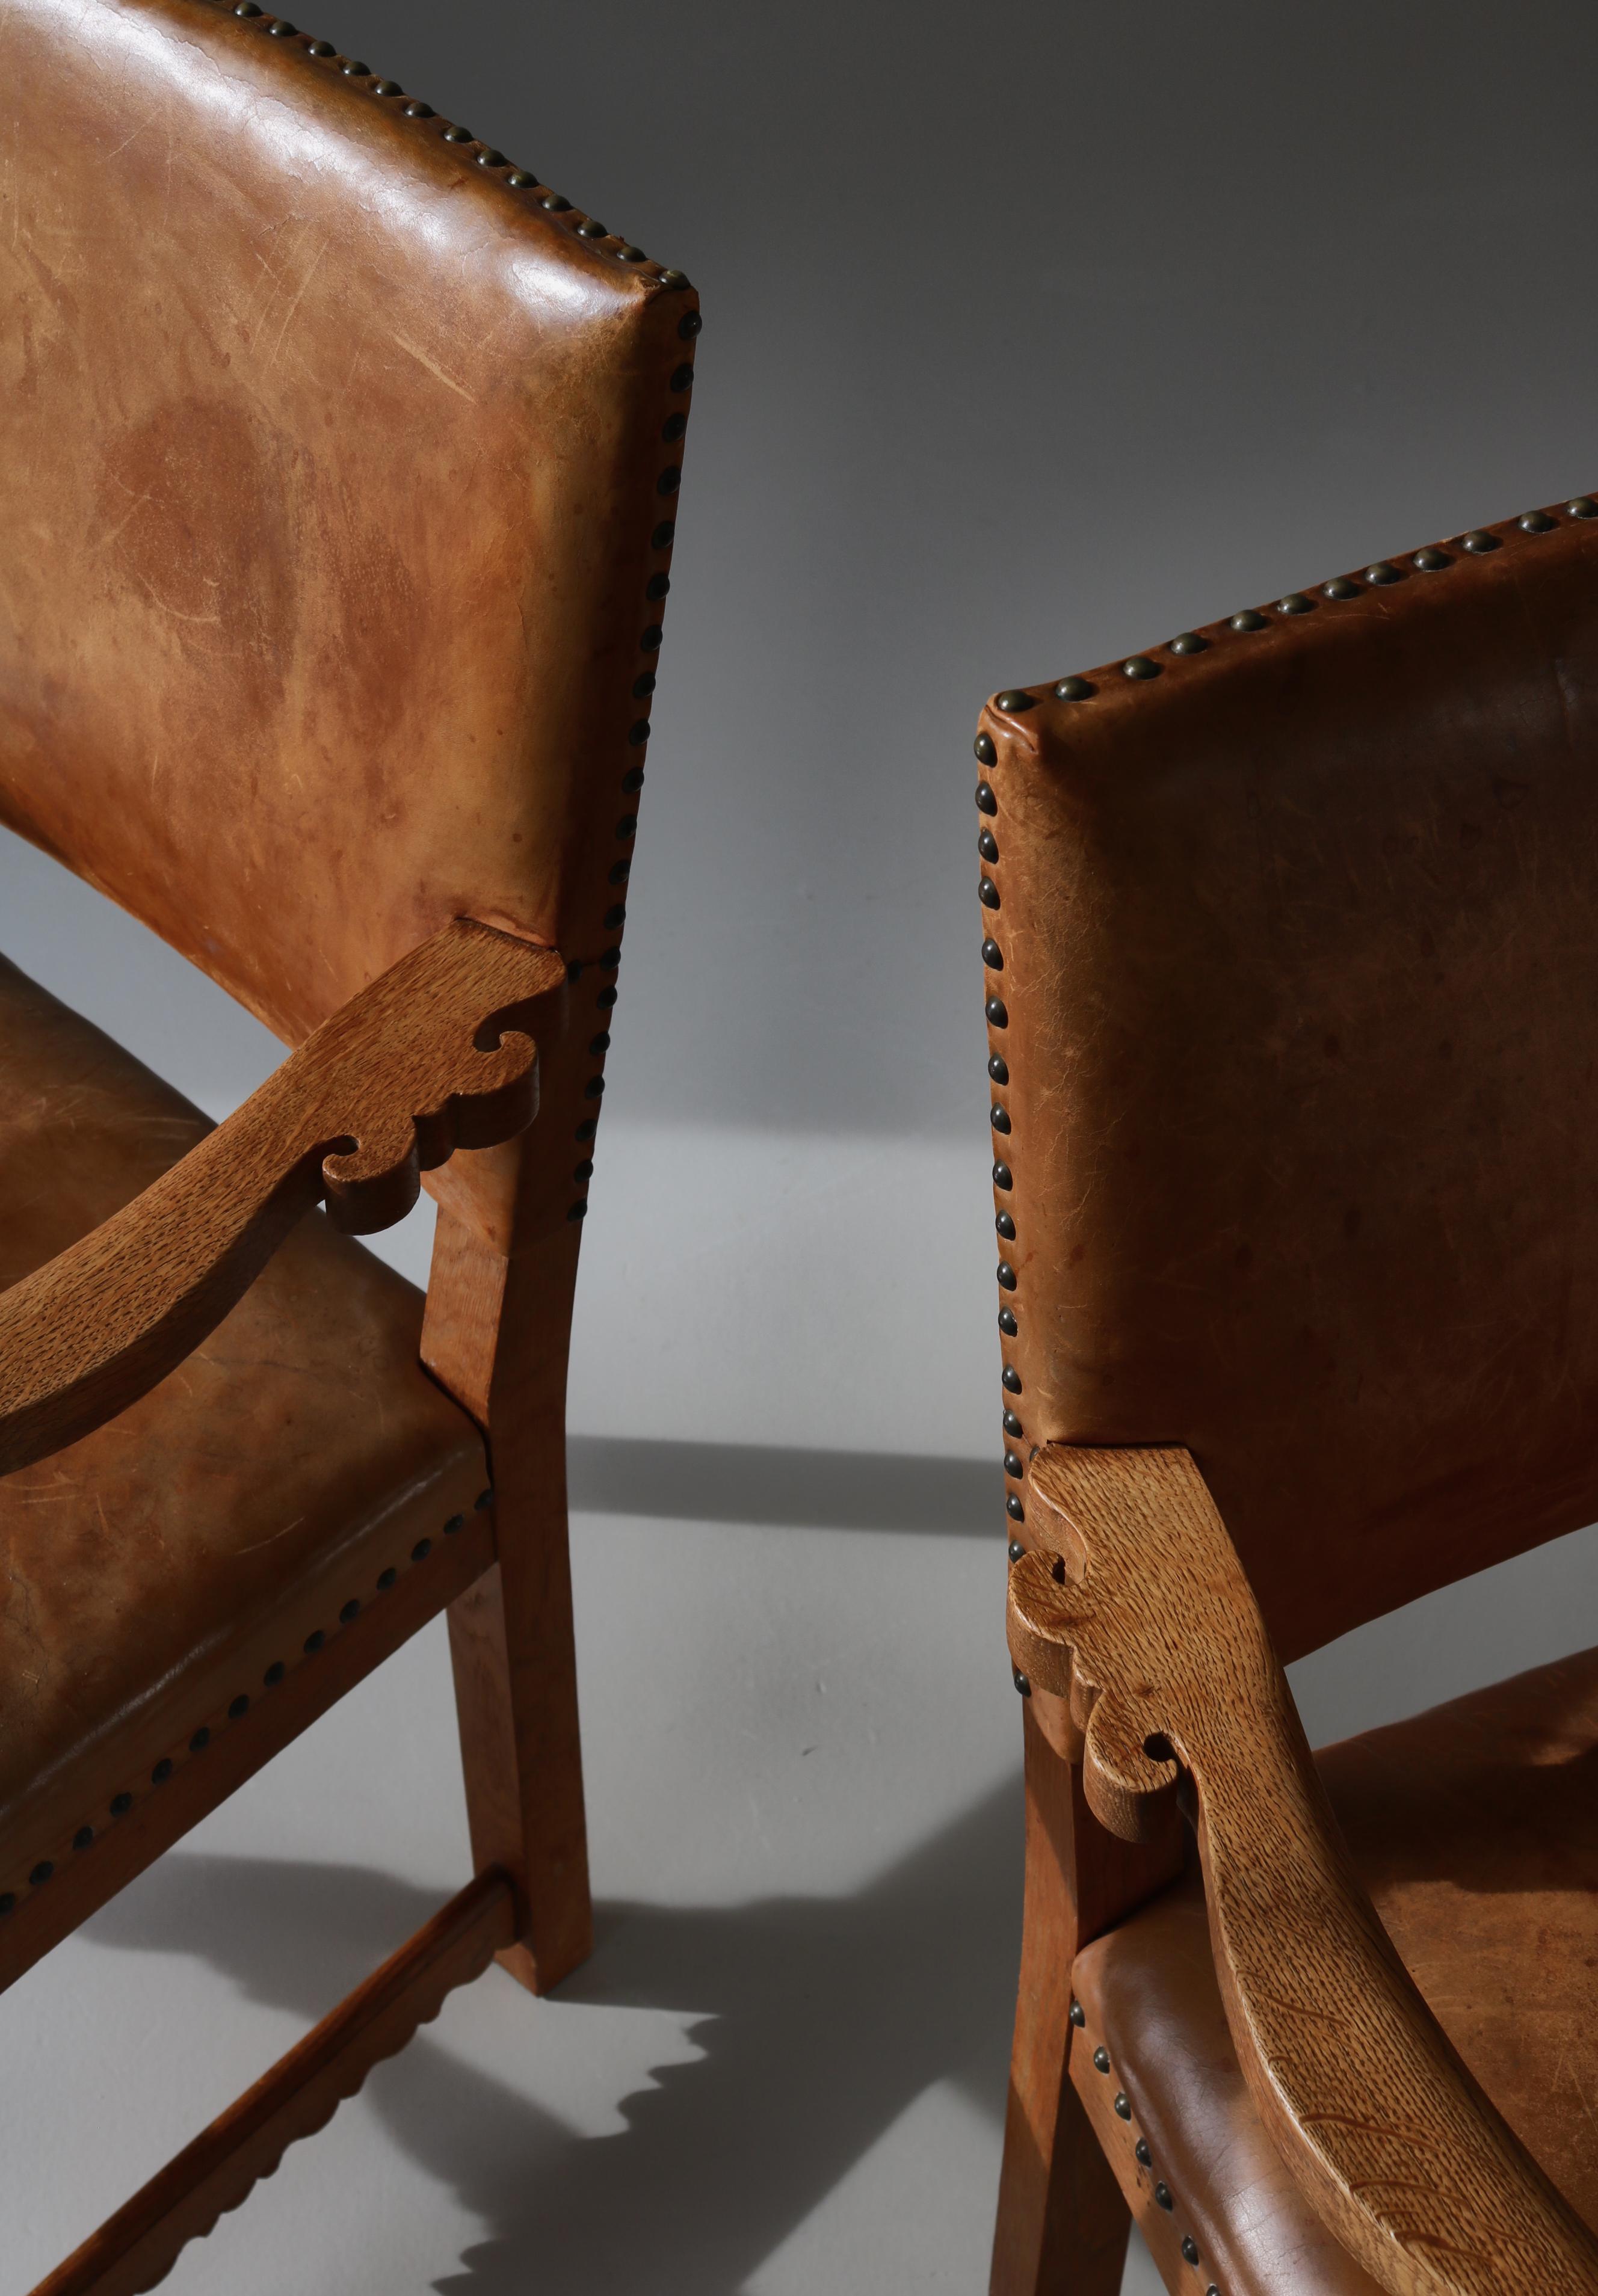 Atemberaubendes Paar skulpturaler Sessel aus massiver Eiche und Naturleder, hergestellt vom dänischen Tischlermeister Lars Møller, Kopenhagen, in den 1930er Jahren. Die Stühle sind modern, aber mit einem verspielten Ausdruck und vielen feinen